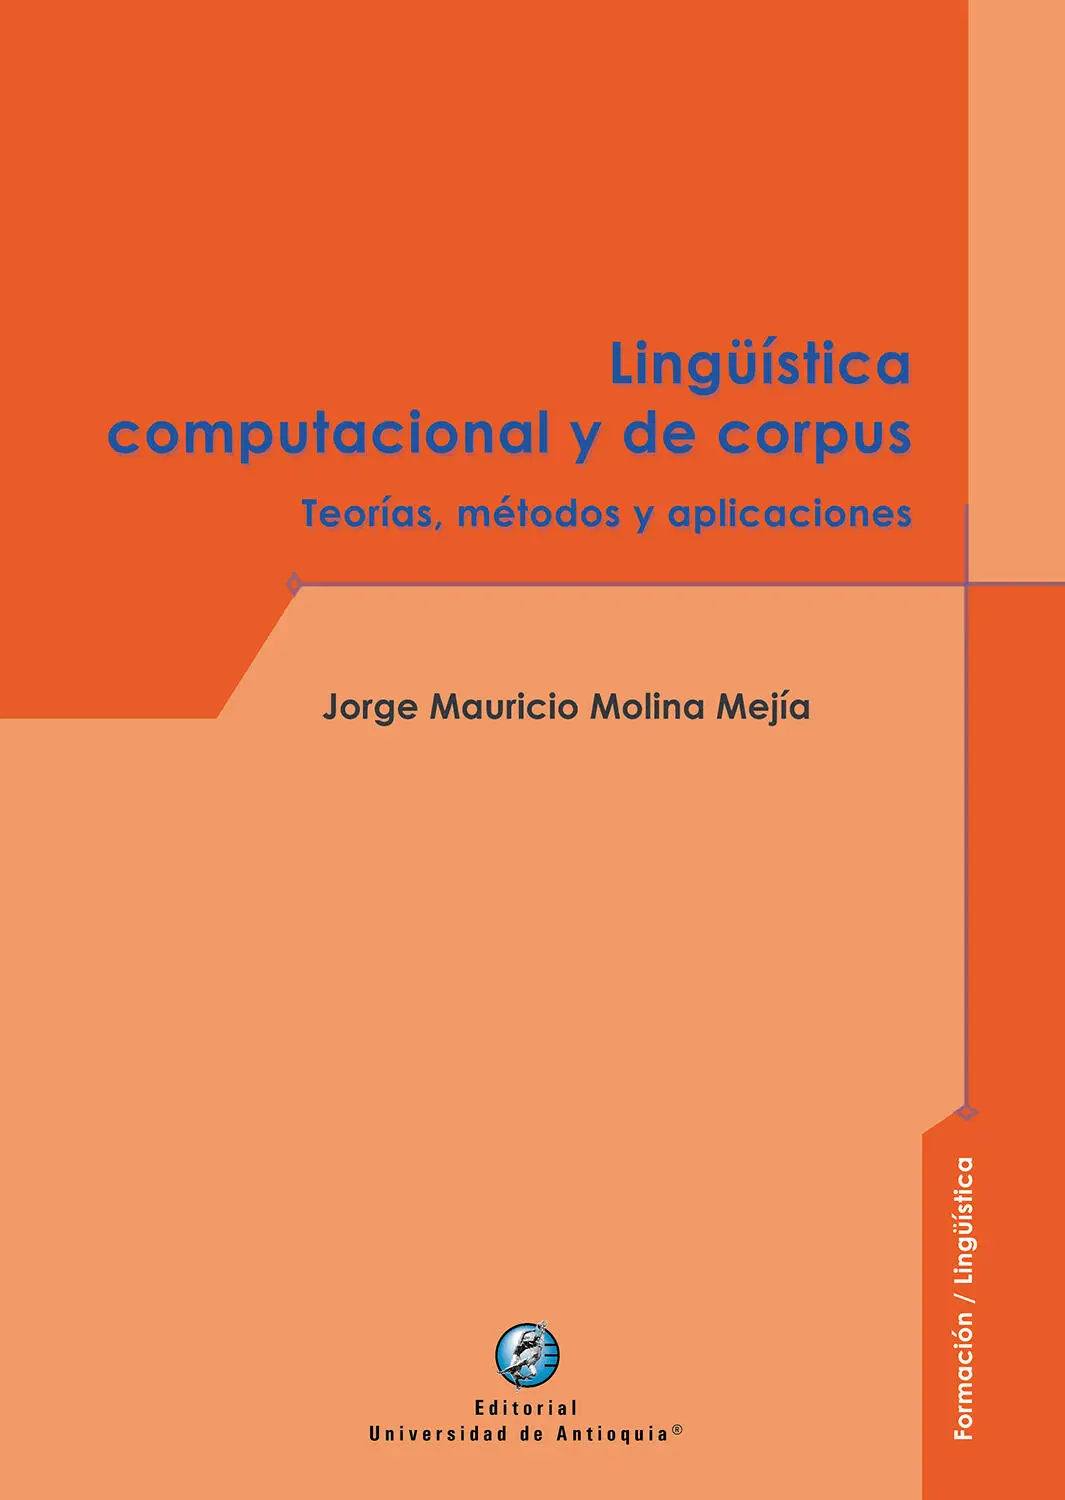 Colección Formación Lingüística Jorge Mauricio Molina Mejía Editorial - фото 1